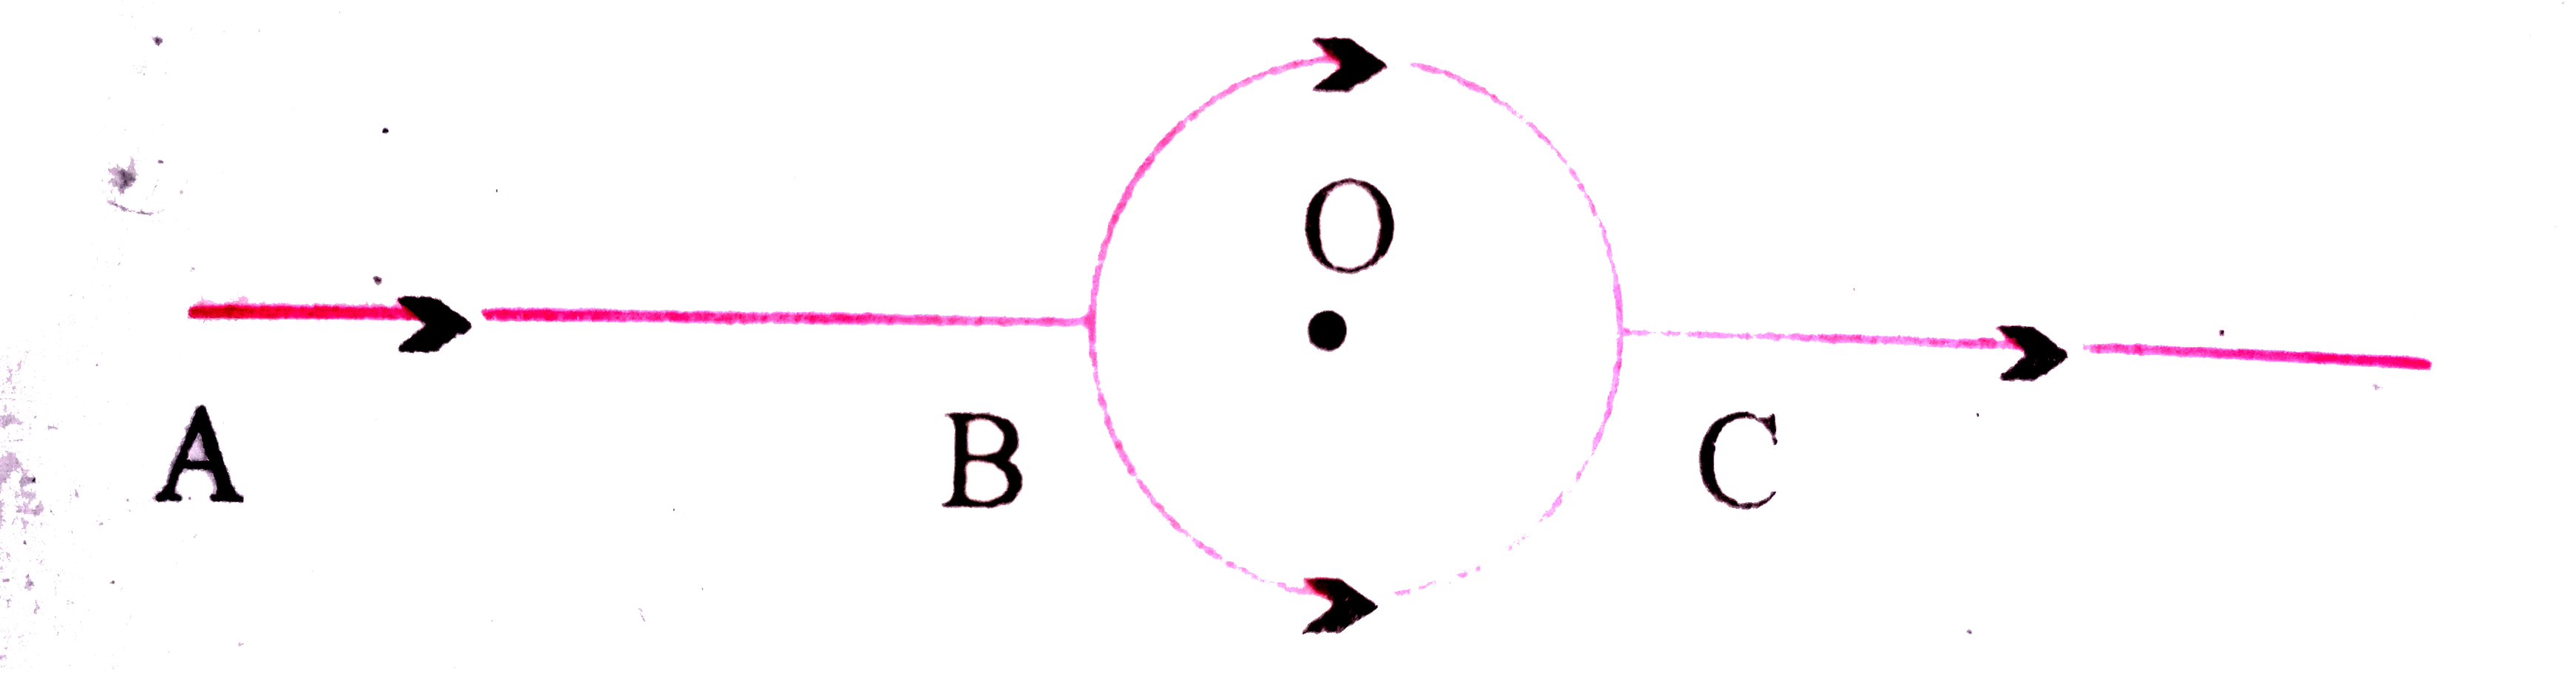 चित्र में AB भाग में प्रबाहित धारा B से C तक दो अर्द्धवृत्तीय चालकों में से होकर प्रभावित होती है अर्द्धवृत्तीय चालकों की वक्रता त्रिज्याएँ एवं प्रतिरोध सामान है वृत्त O केंद्र पर चुंबकीय क्षेत्र के तीव्रता क्या होगी ?